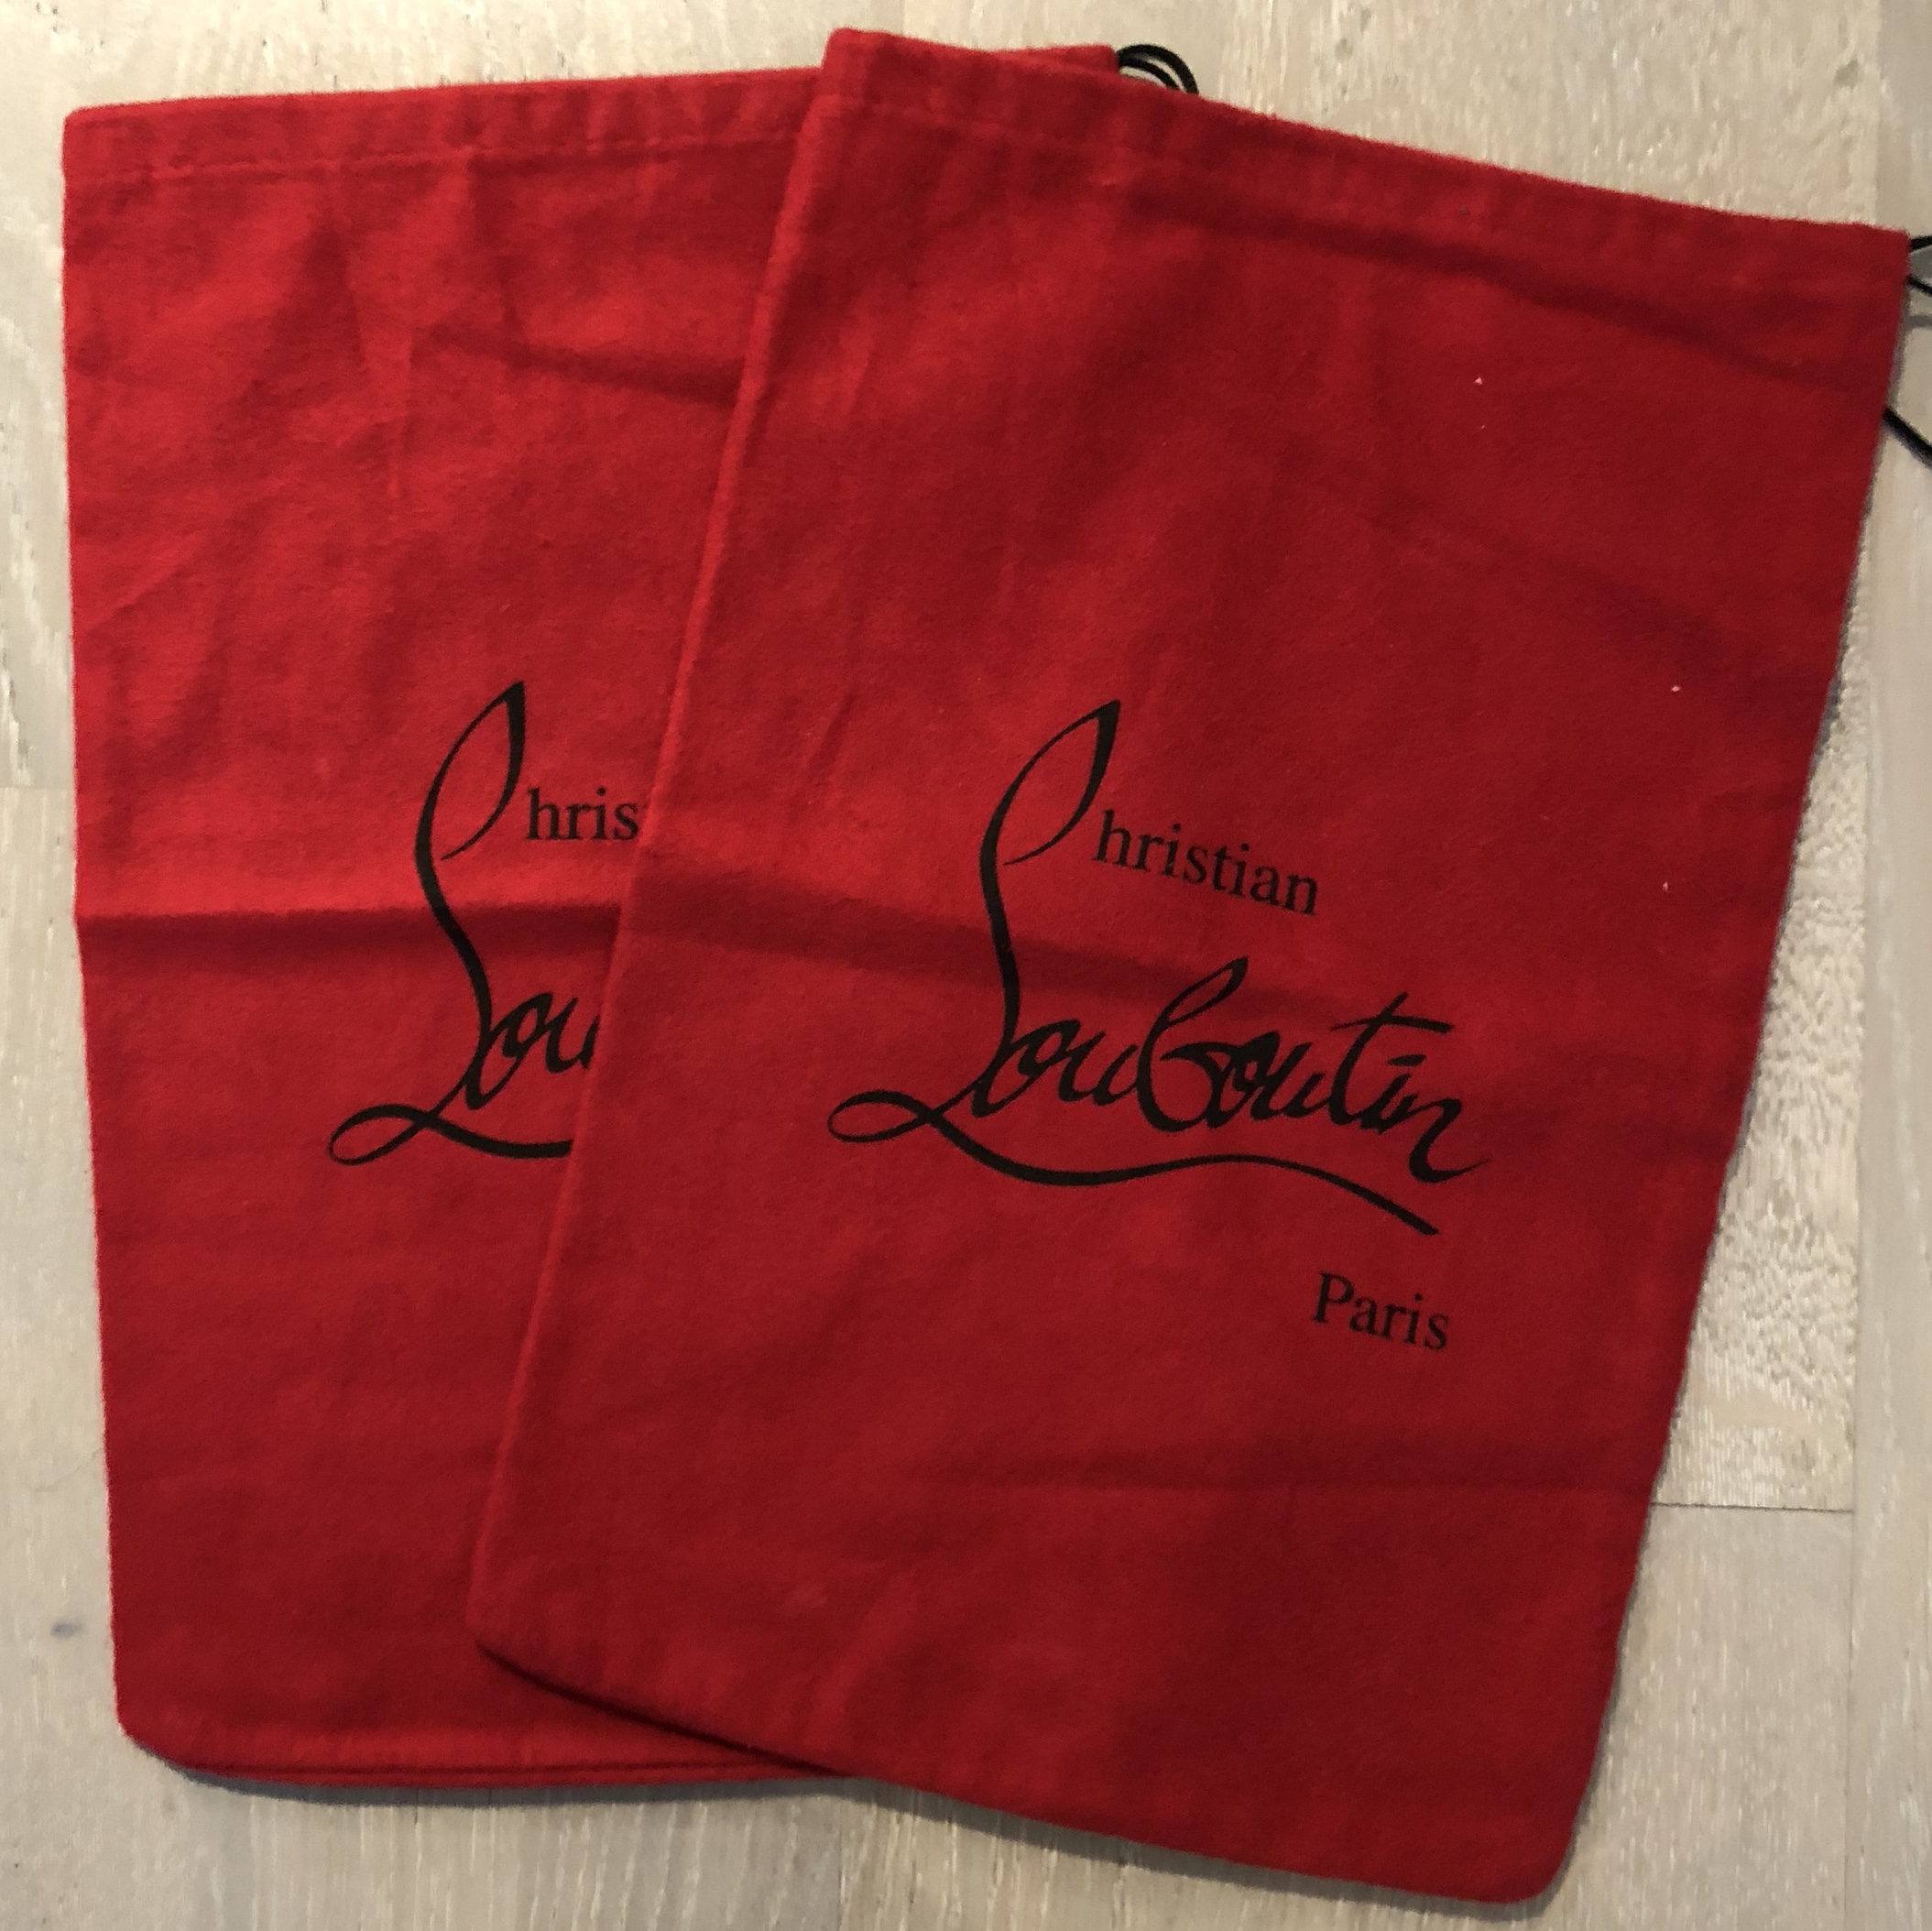 Authentic Louboutin dust bag